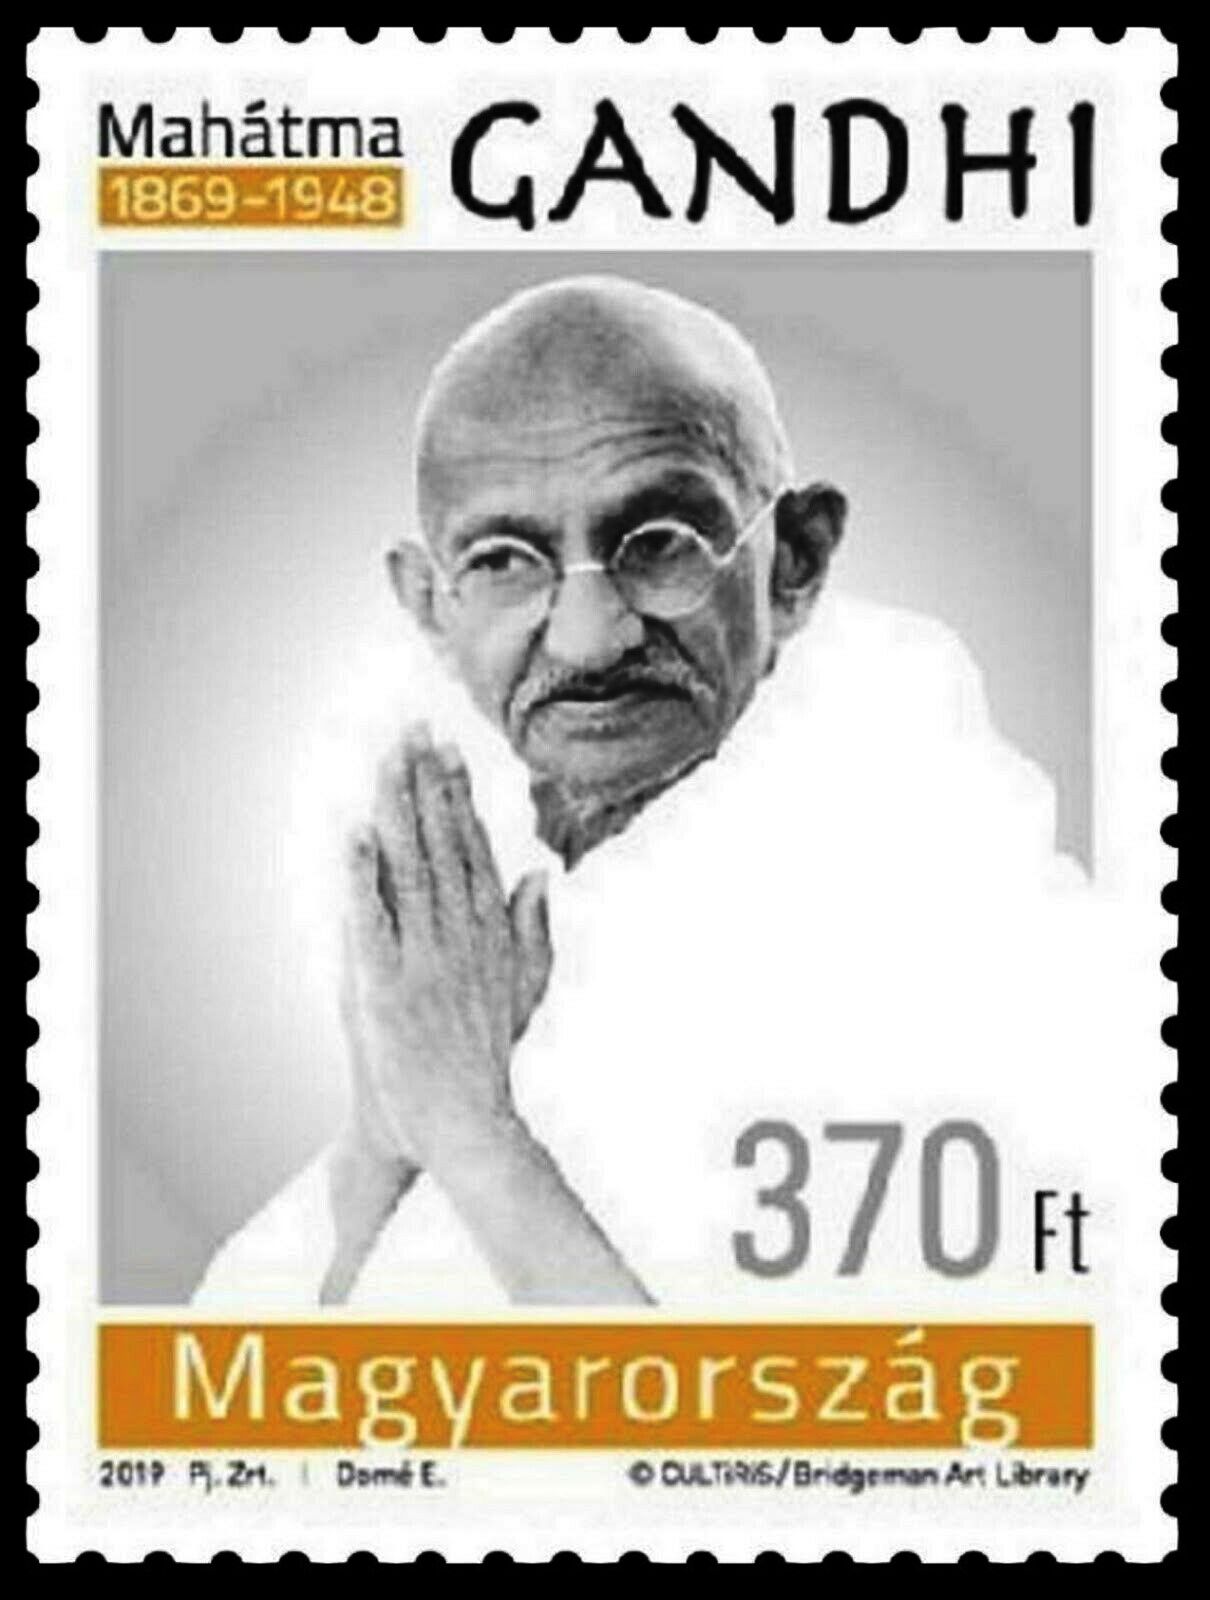 Hungary 2019 Stamp Birth Anniversary of Mahatma Gandhi